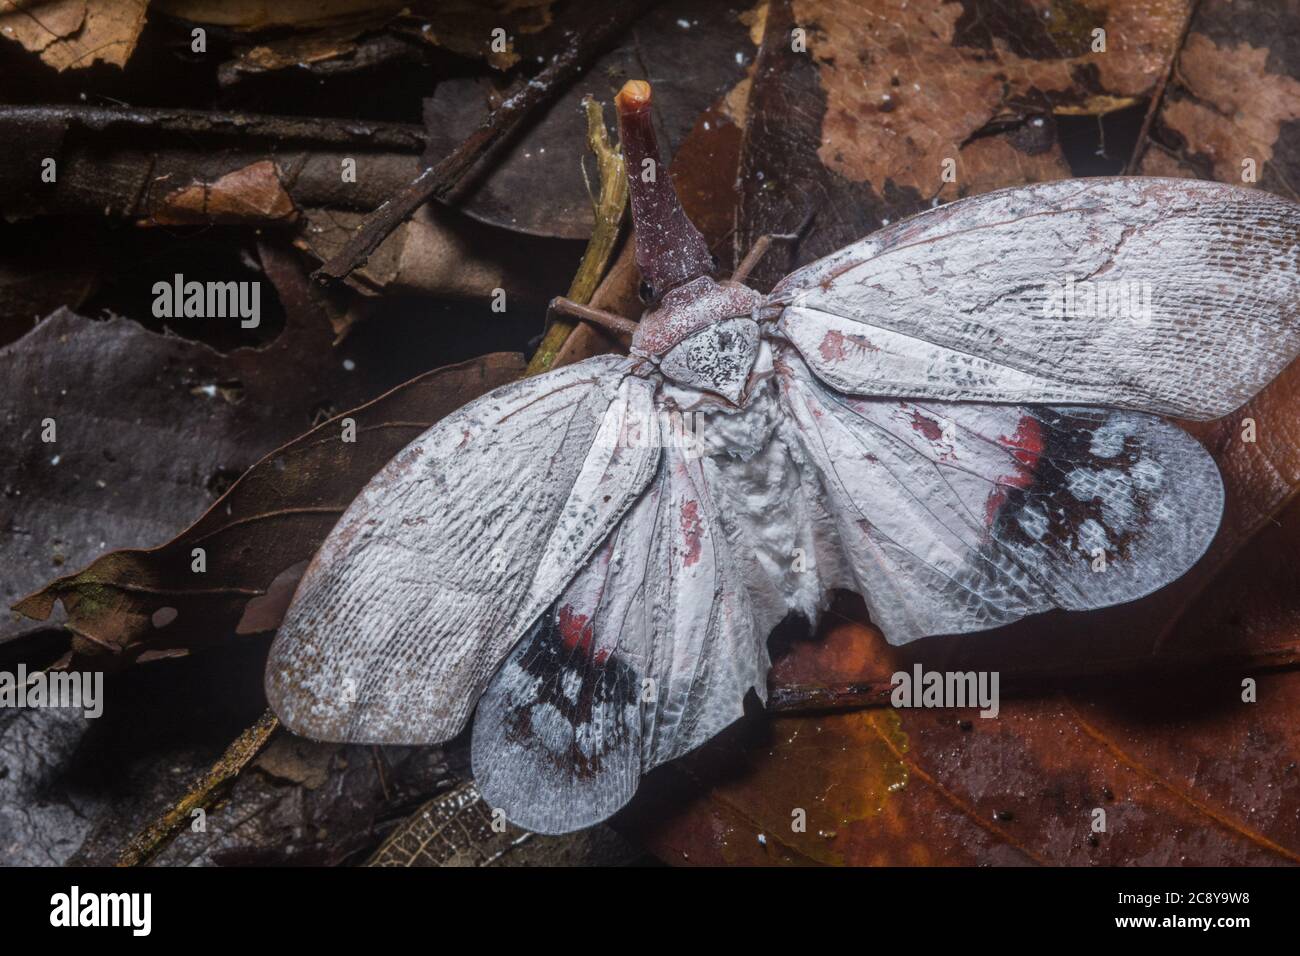 Un gros insecte lanterne (Pyrops sultana) un type de planthopper de Bornéo. Banque D'Images